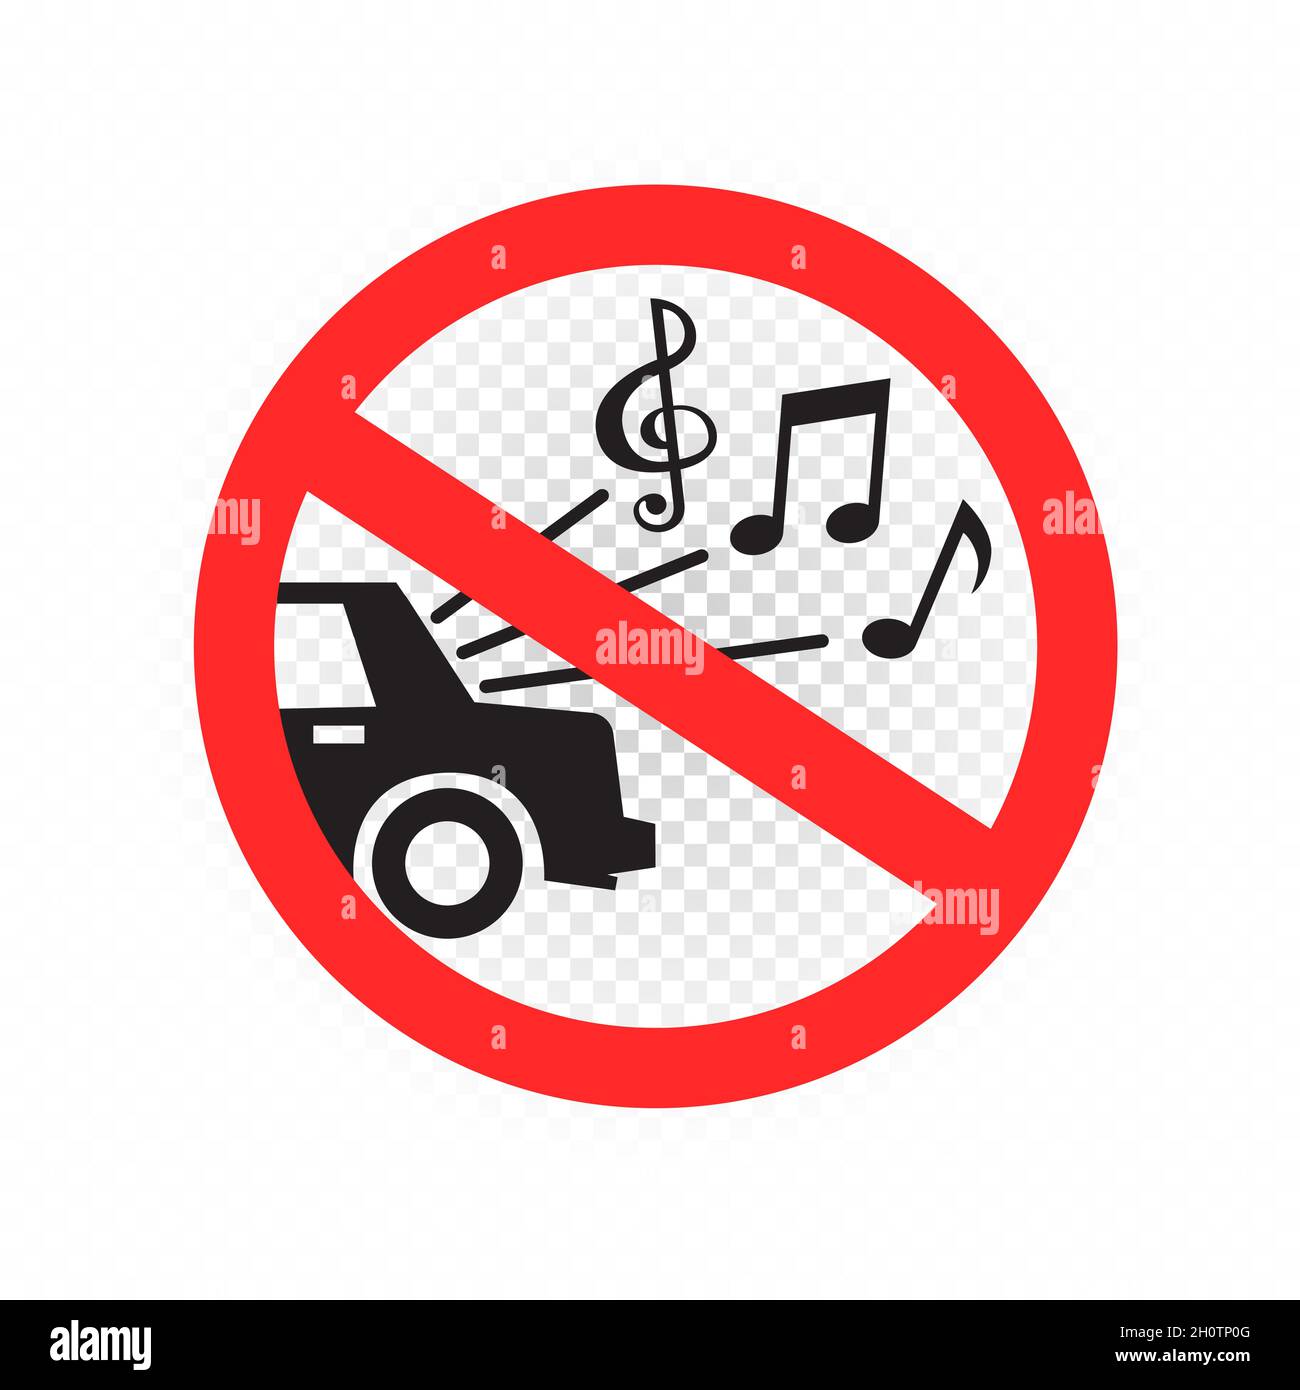 il est interdit de diffuser de la musique à plein volume dans la voiture Illustration de Vecteur